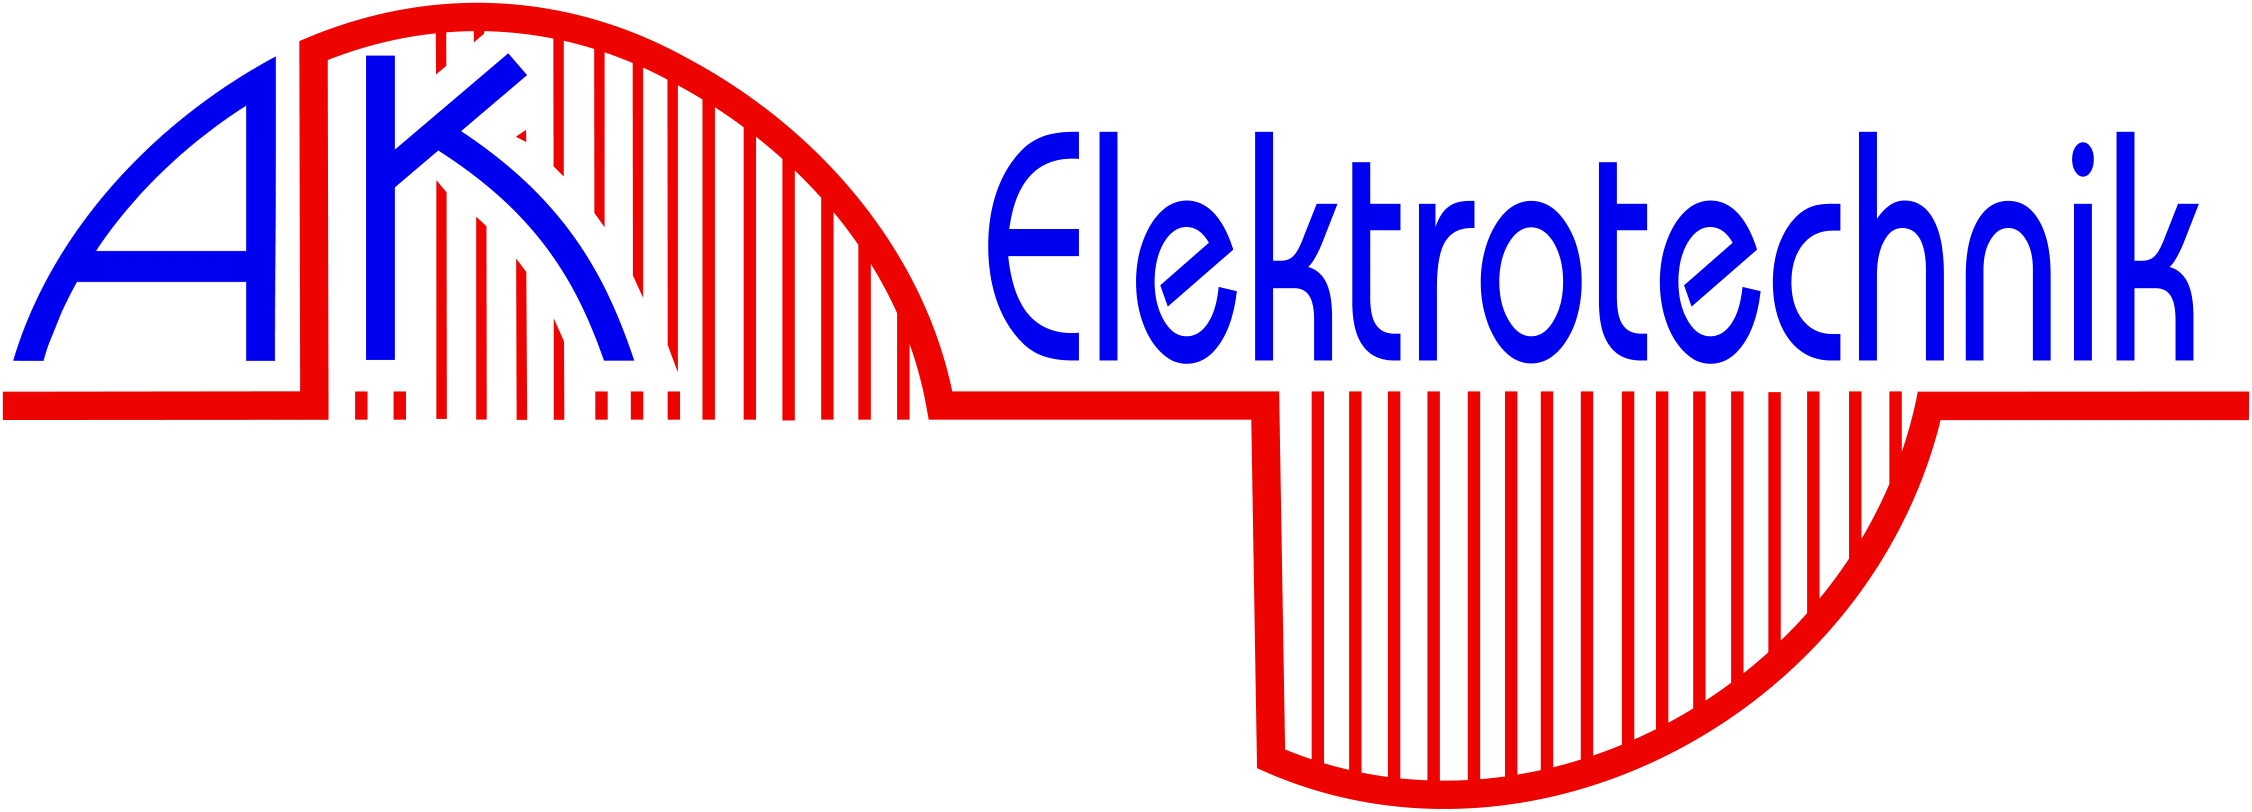 (c) Ak-elektrotechnik.de